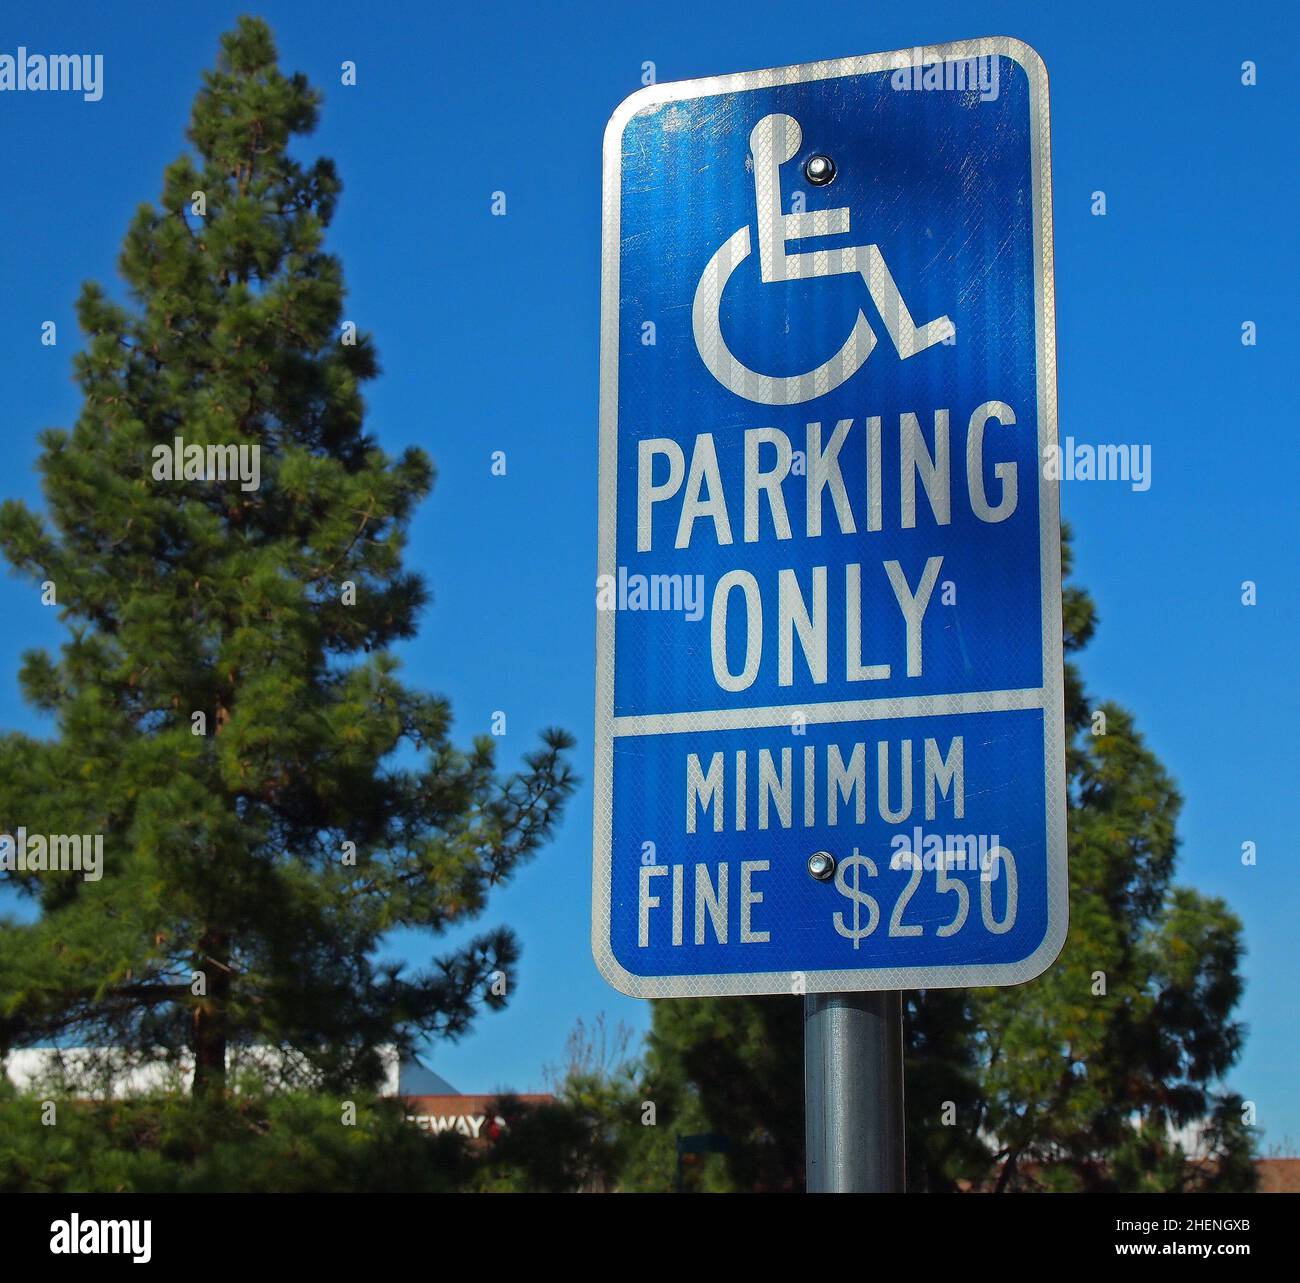 Parking handicapés uniquement, amende minimale de 250 $, panneau à Pleasanton, Californie Banque D'Images